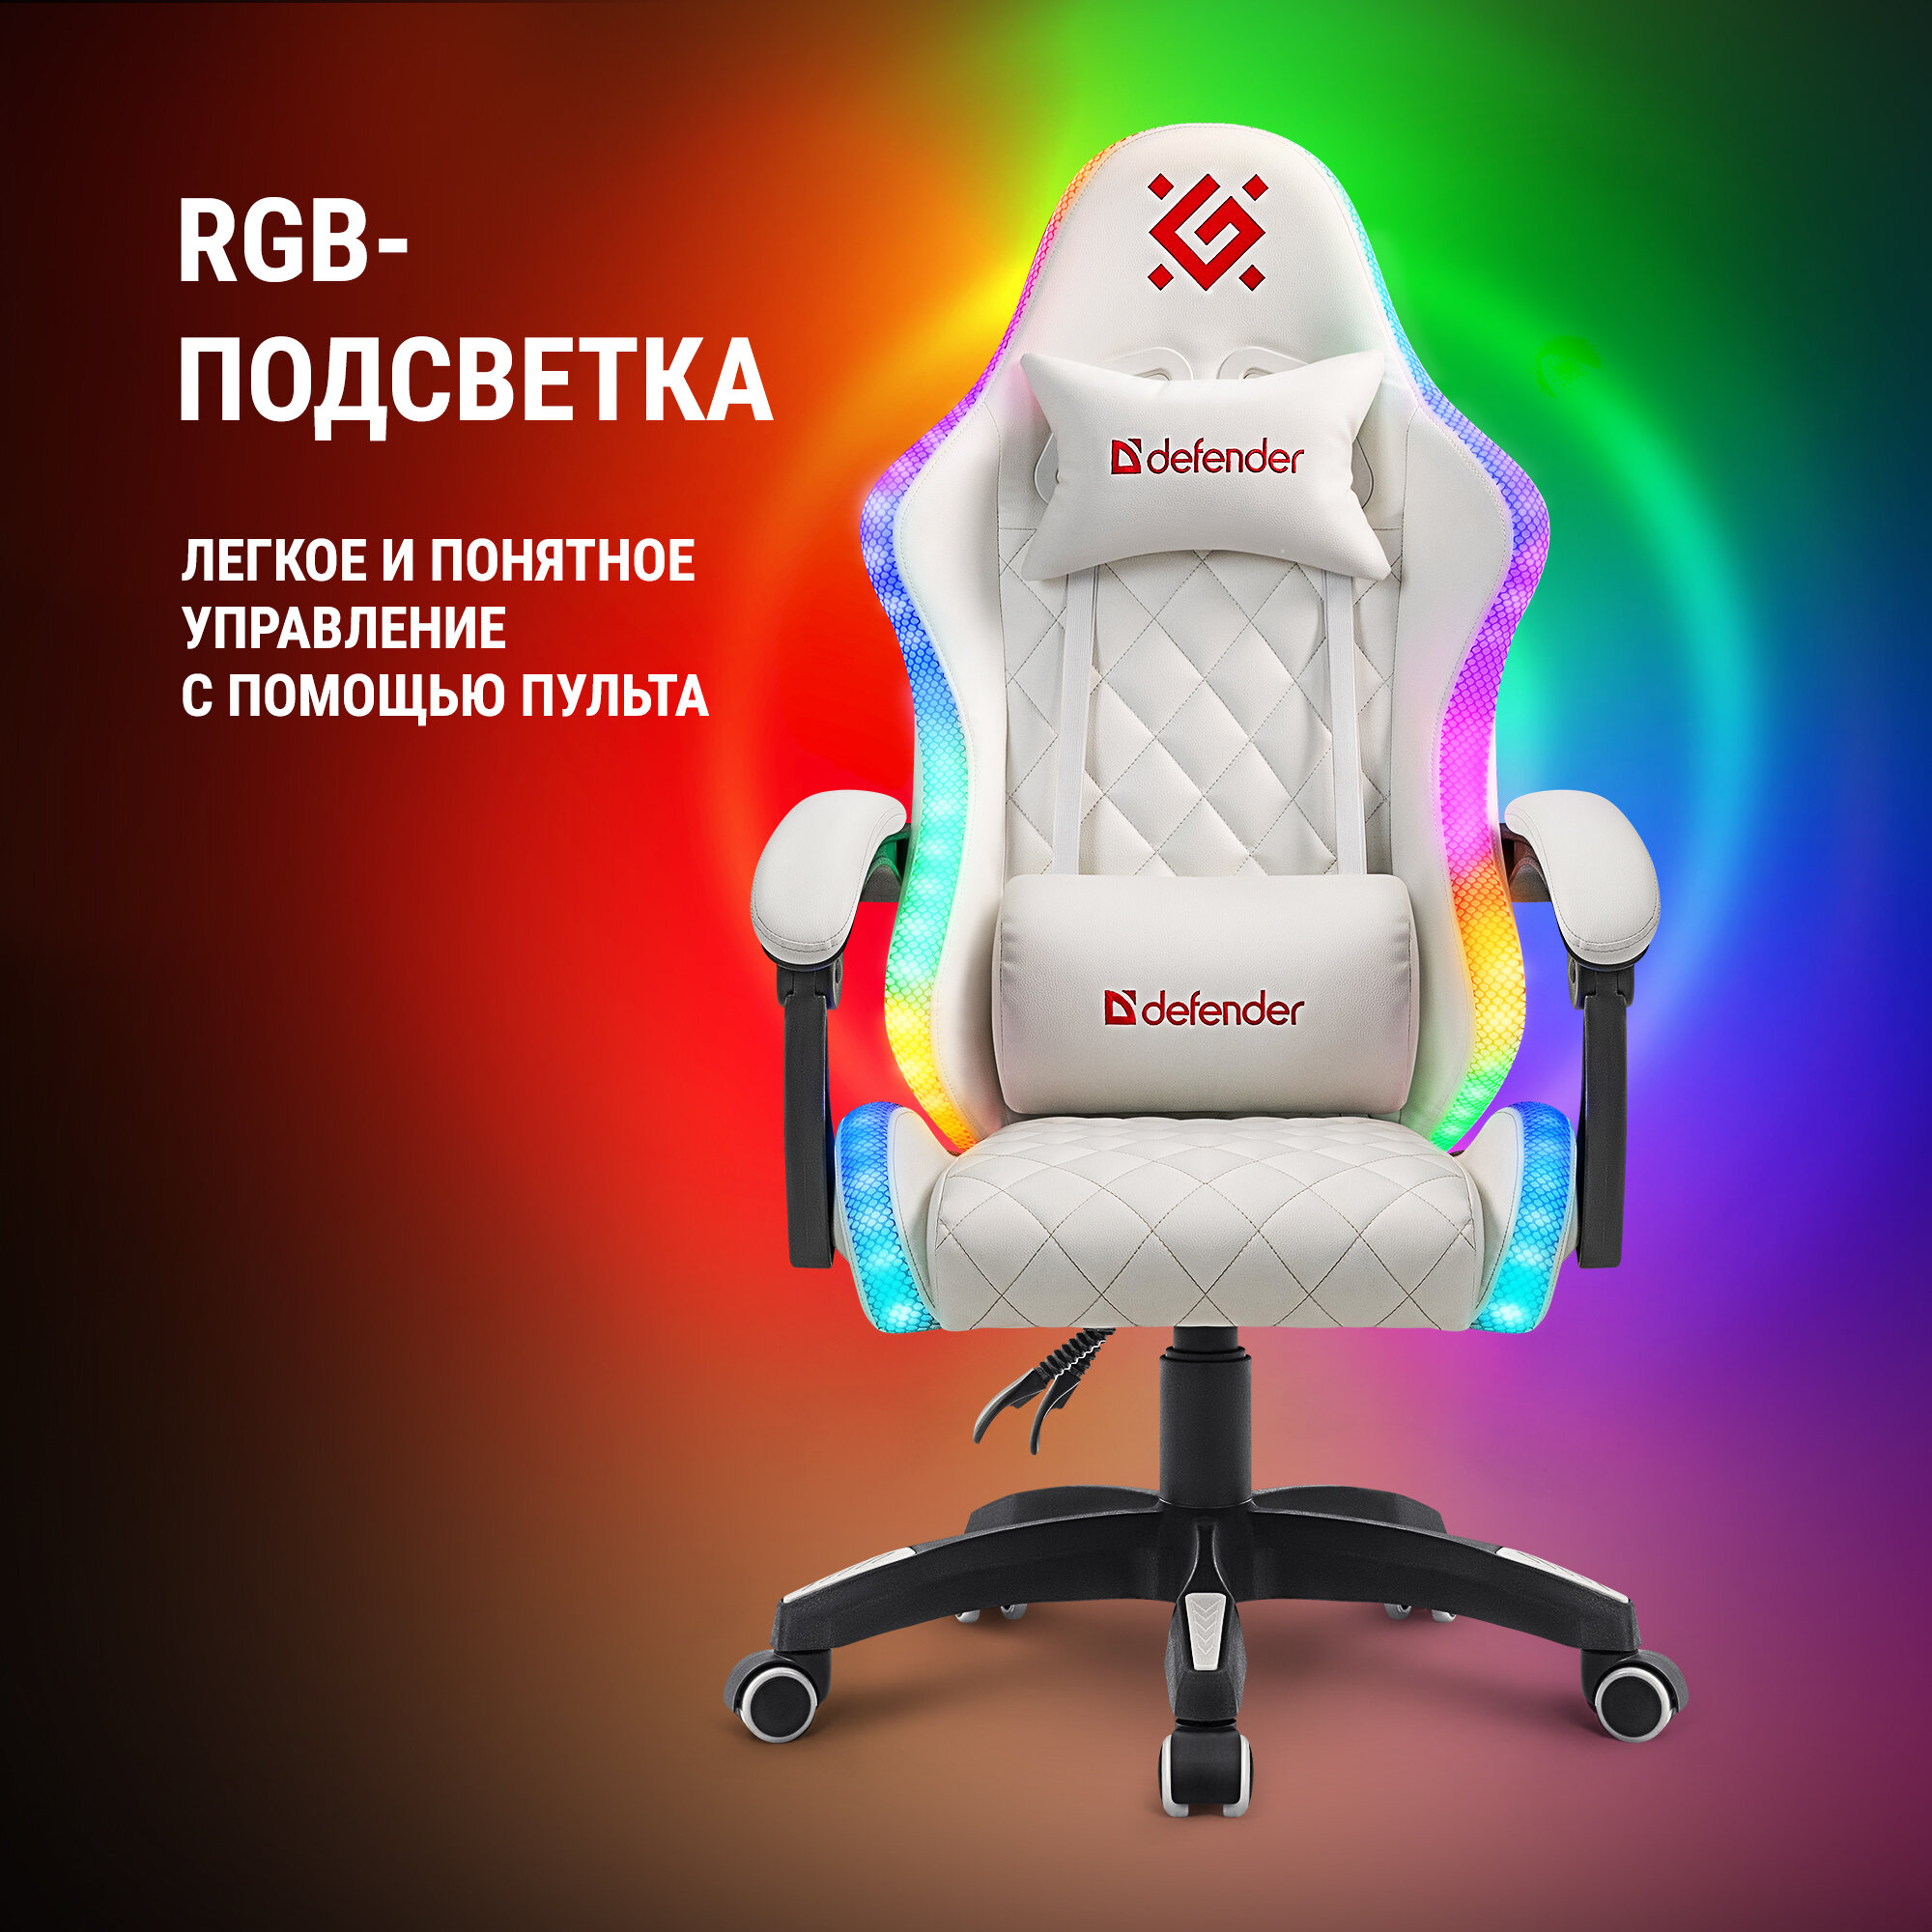 Игровое компьютерное кресло с RGB подсветкой Defender Energy